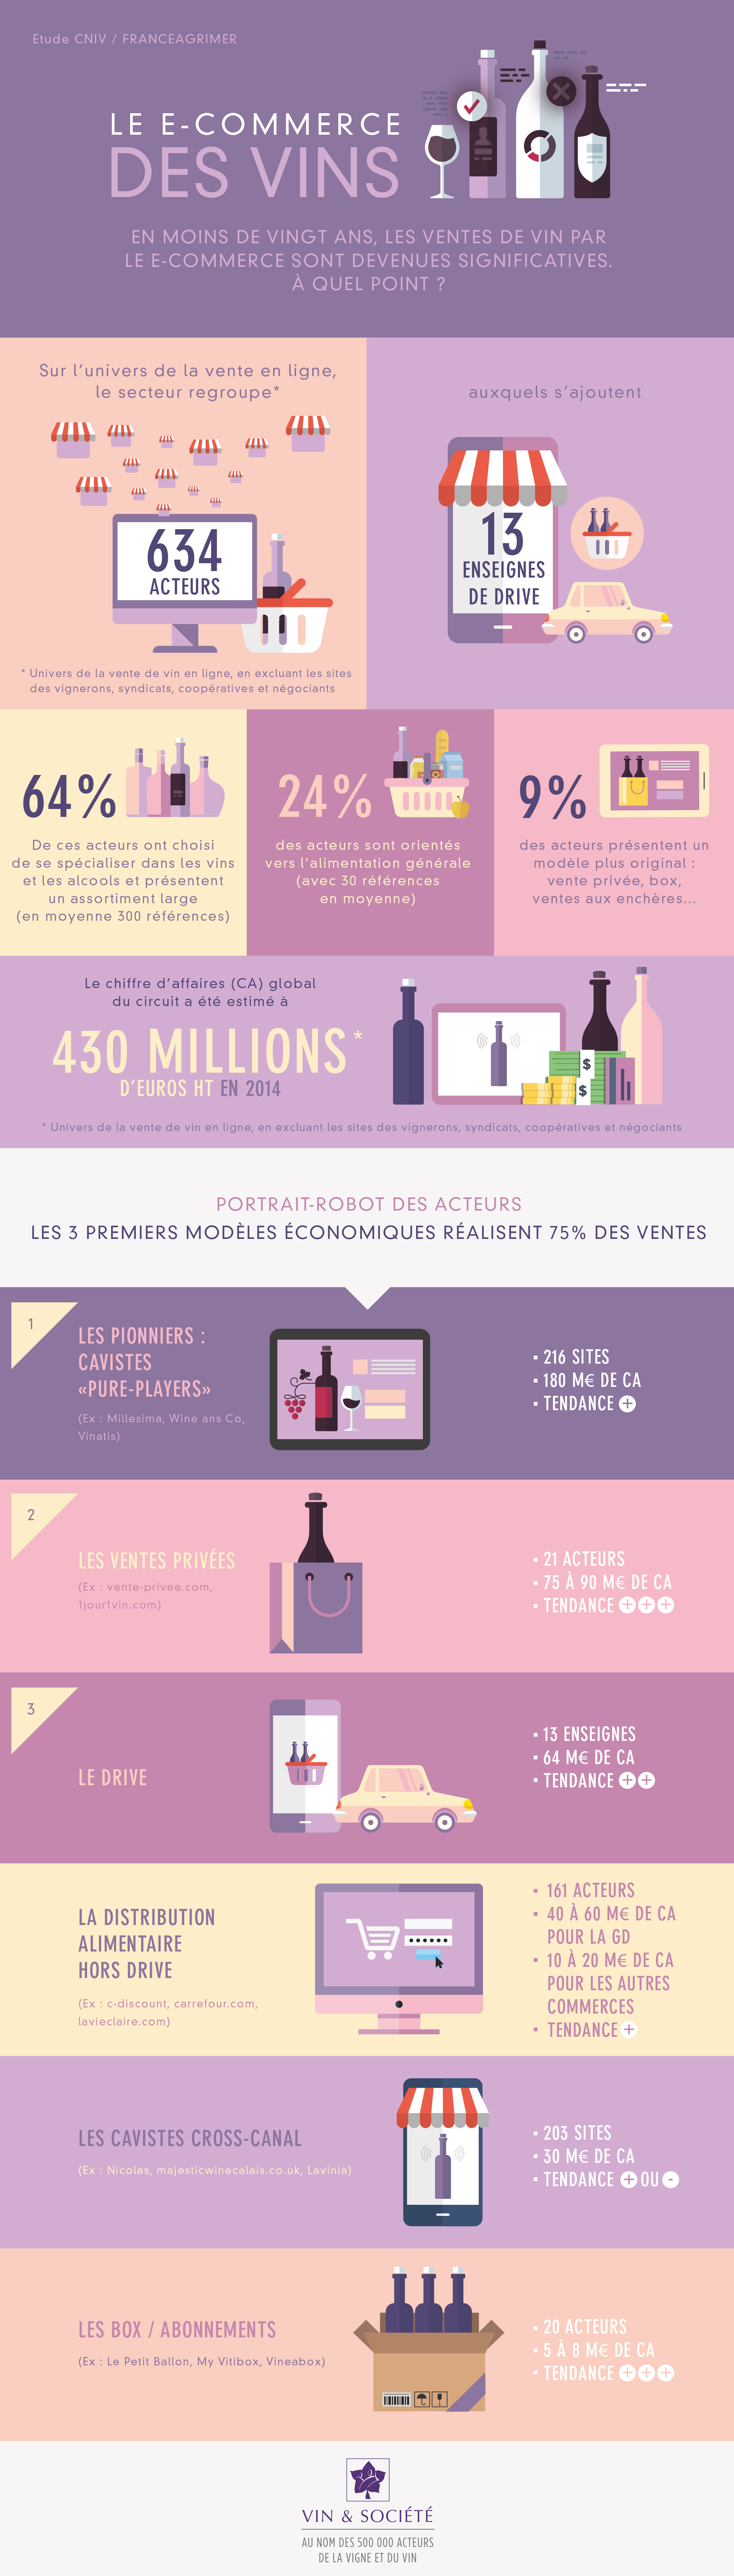 Infographie "Le e-commerce des vins"